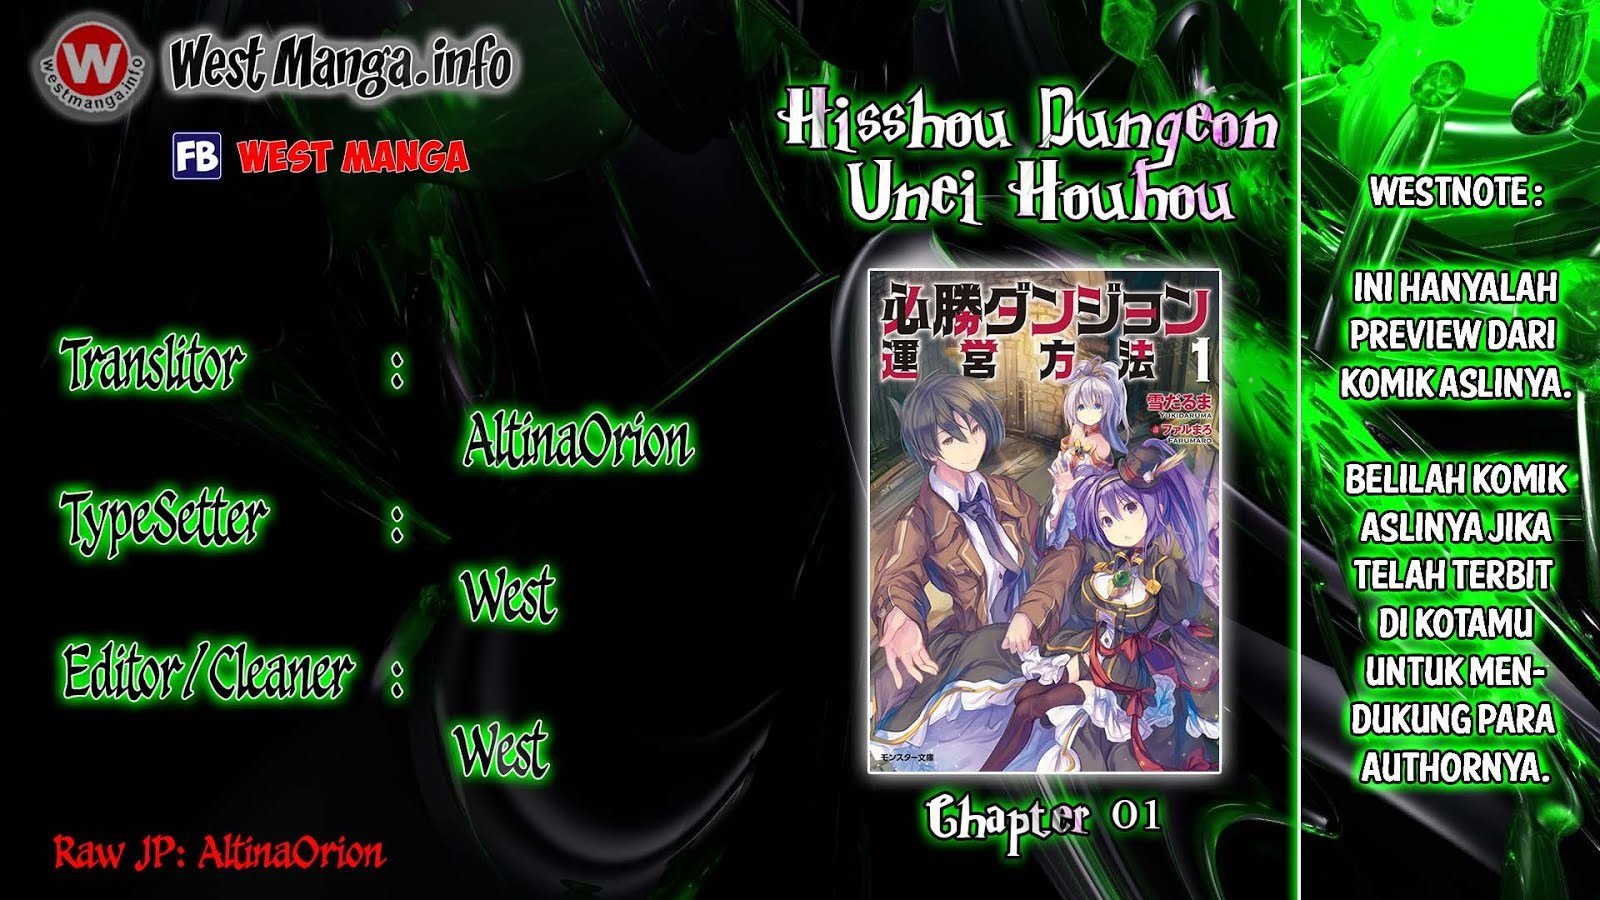 Hisshou Dungeon Unei Houhou Chapter 01